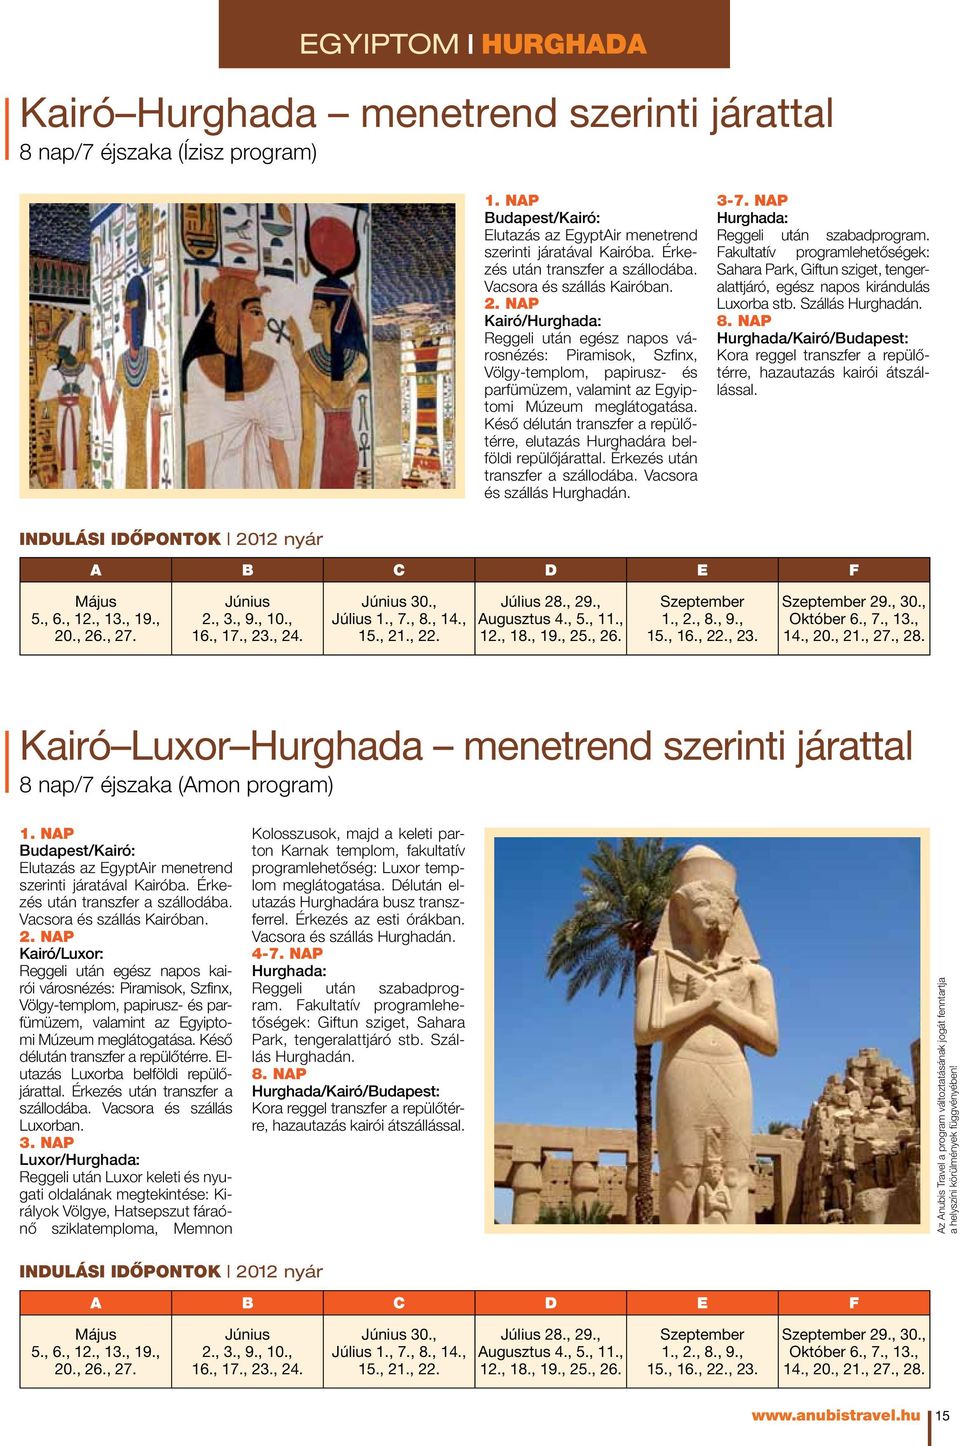 nap Kairó/Hurghada: Reggeli után egész napos városnézés: Piramisok, Szfinx, Völgy-templom, papirusz- és parfümüzem, valamint az Egyiptomi Múzeum meglátogatása.